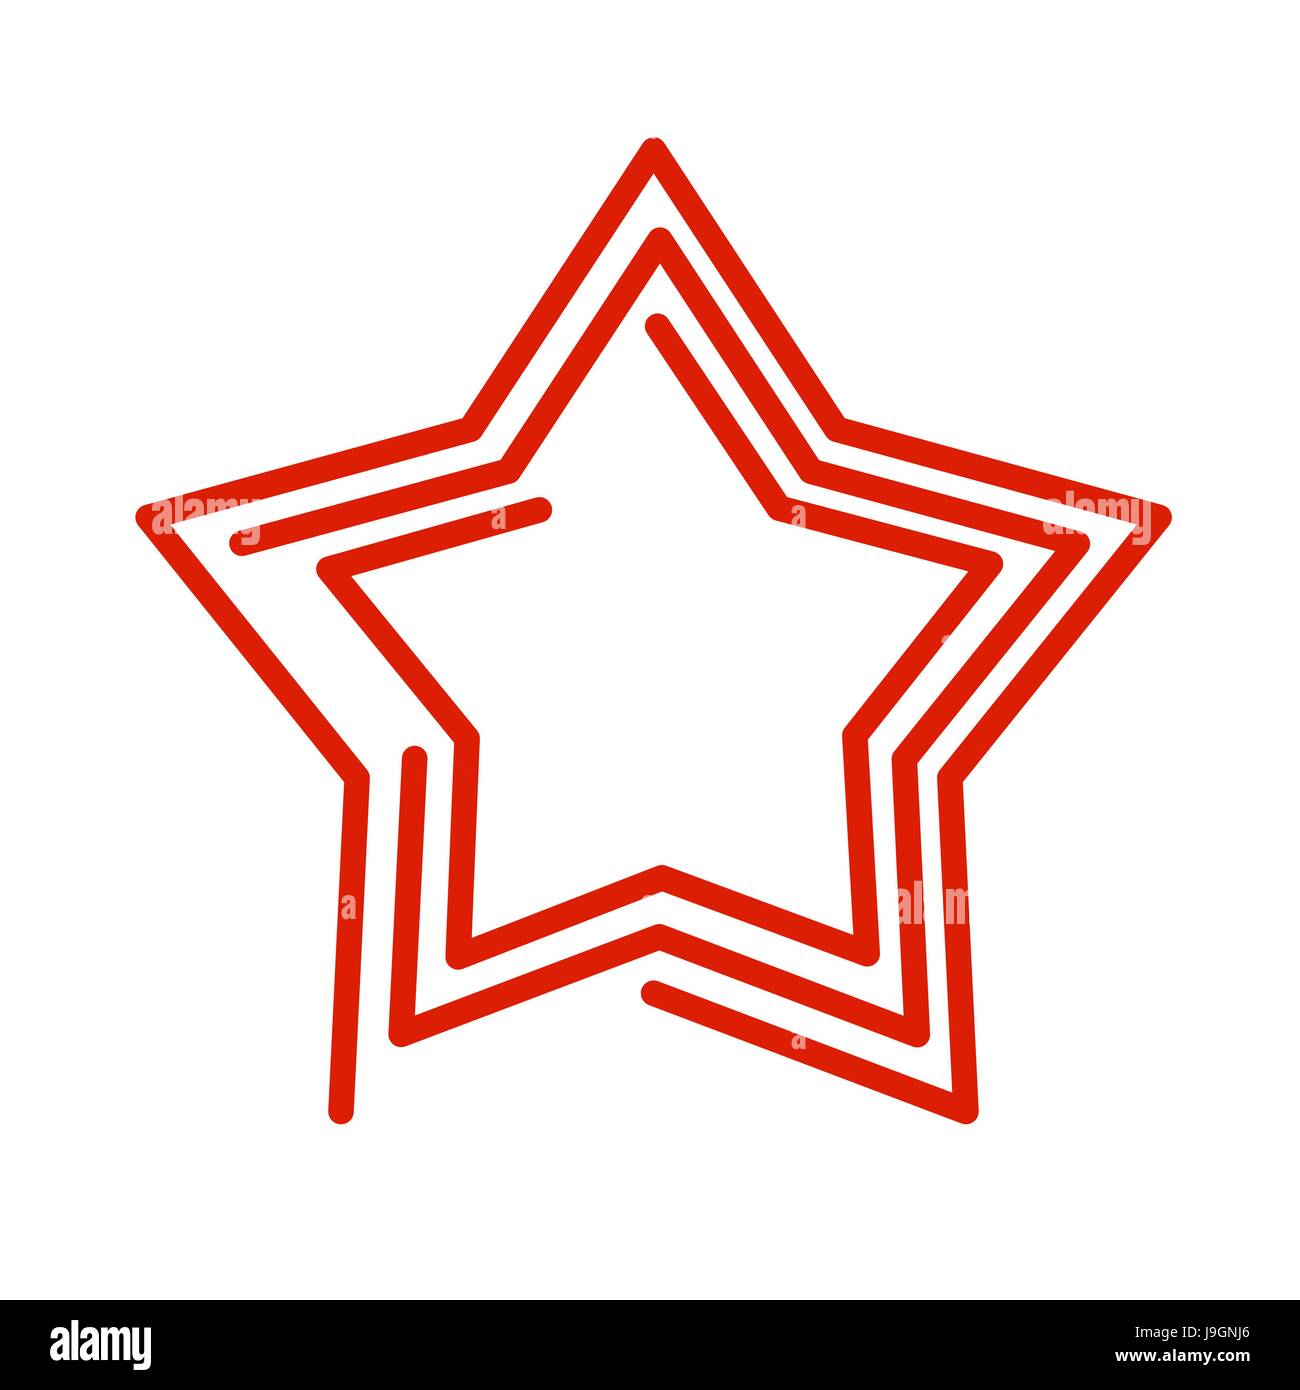 Star Stile linea. Rosso segno astratto su sfondo bianco Illustrazione Vettoriale